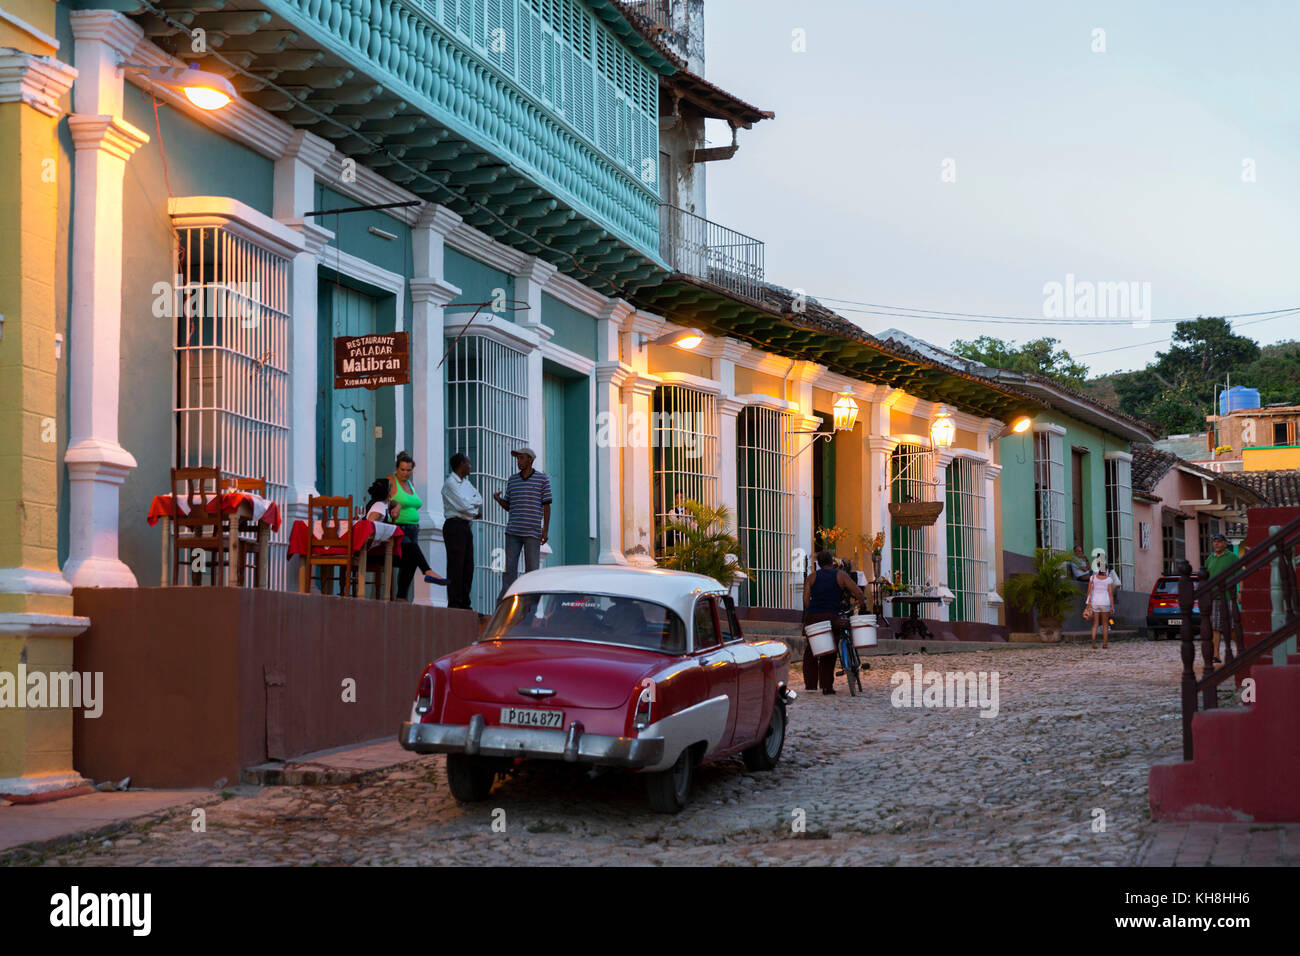 Koloniale Hausfassaden in der Altstadt von Trinidad, Provinz Sancti Spiritus, Kuba Engl.: Cuba, Sancti Spiritus province, Trinidad, historic center, c Stock Photo